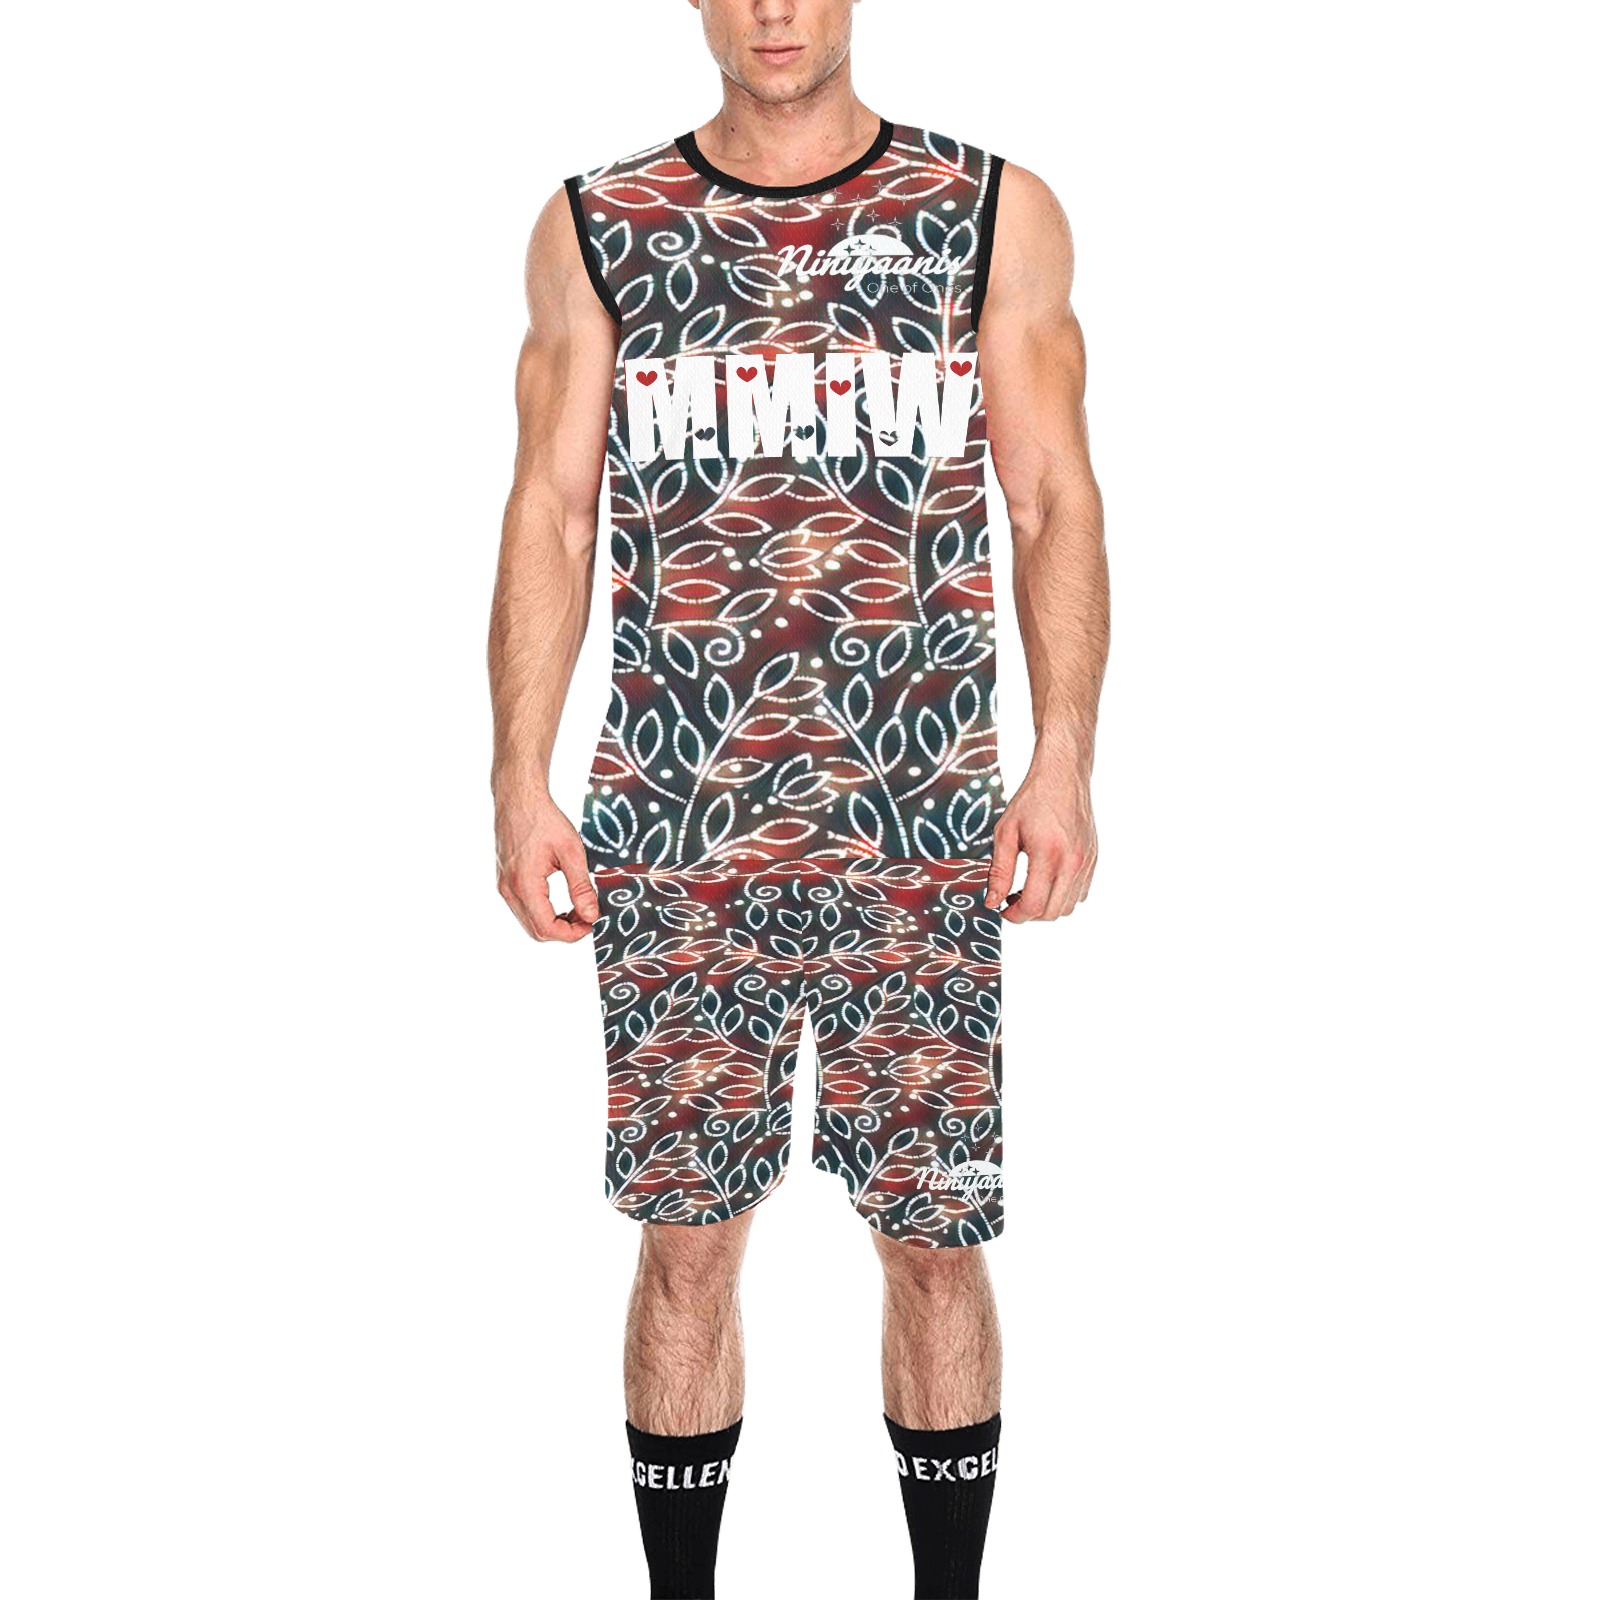 MMIW smith All Over Print Basketball Uniform